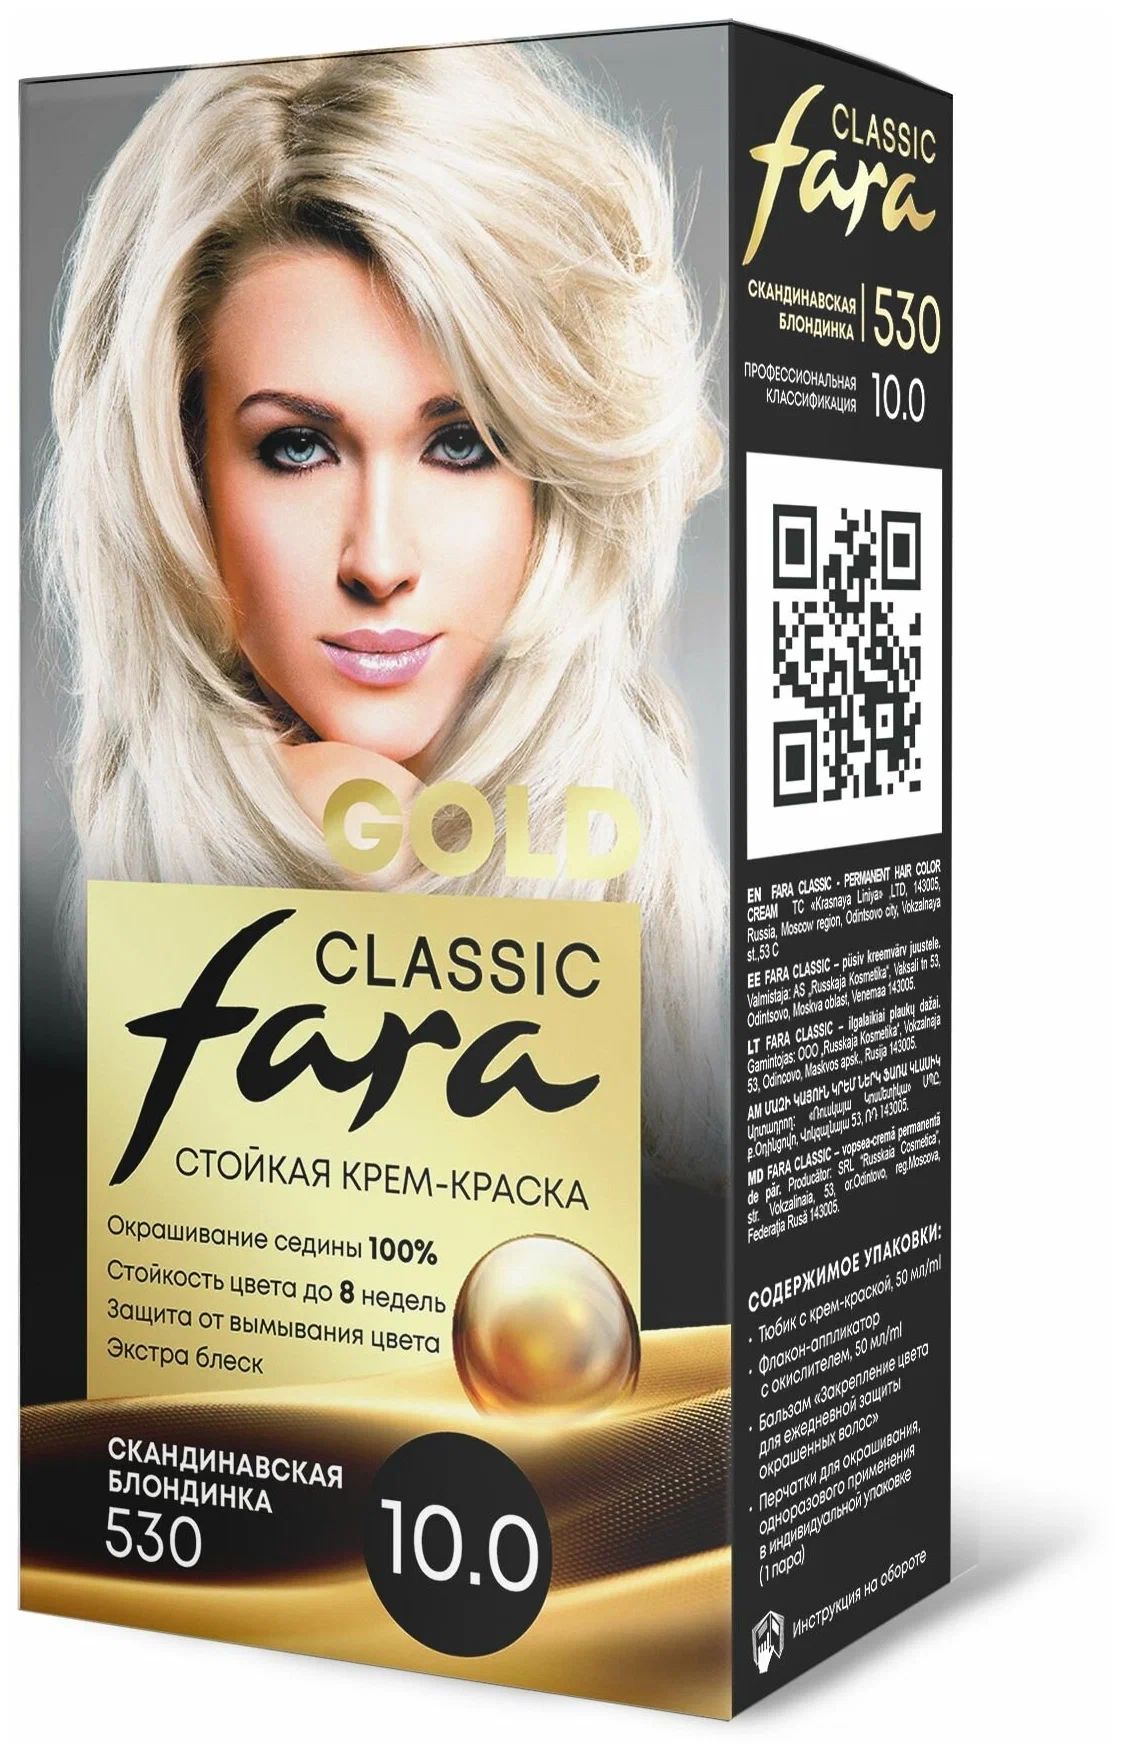 Крем-краска для волос Fara Classic Gold 530 скандинавская блондинка 10.0, 140 г блондинка